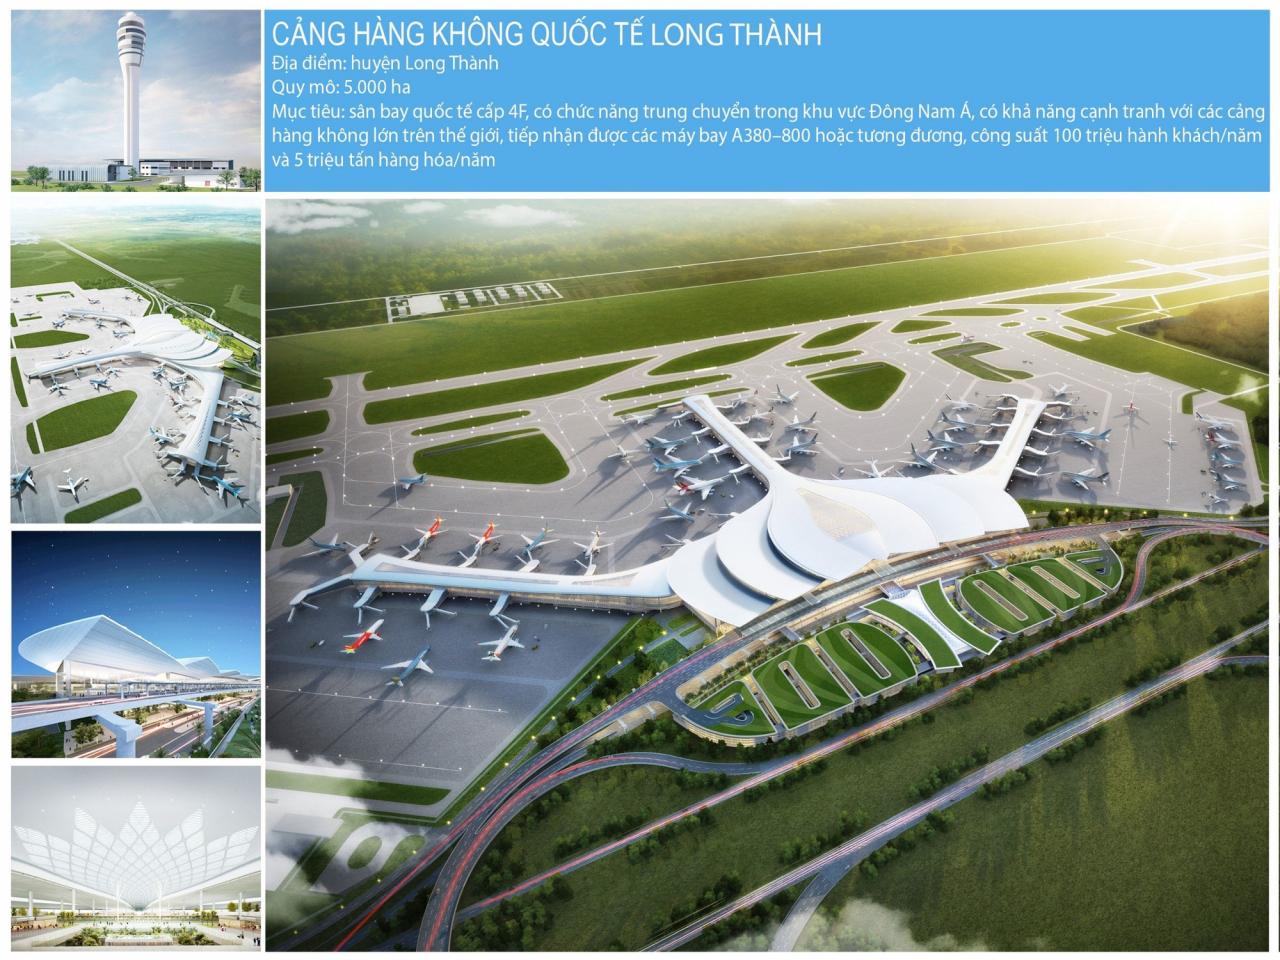 Mô hình sân bay Long Thành. Khu vực làm sân bay cũng là nơi được kỳ vọng tạo đọng lực phát triển kinh tế cho cả vùng - Ảnh: TL